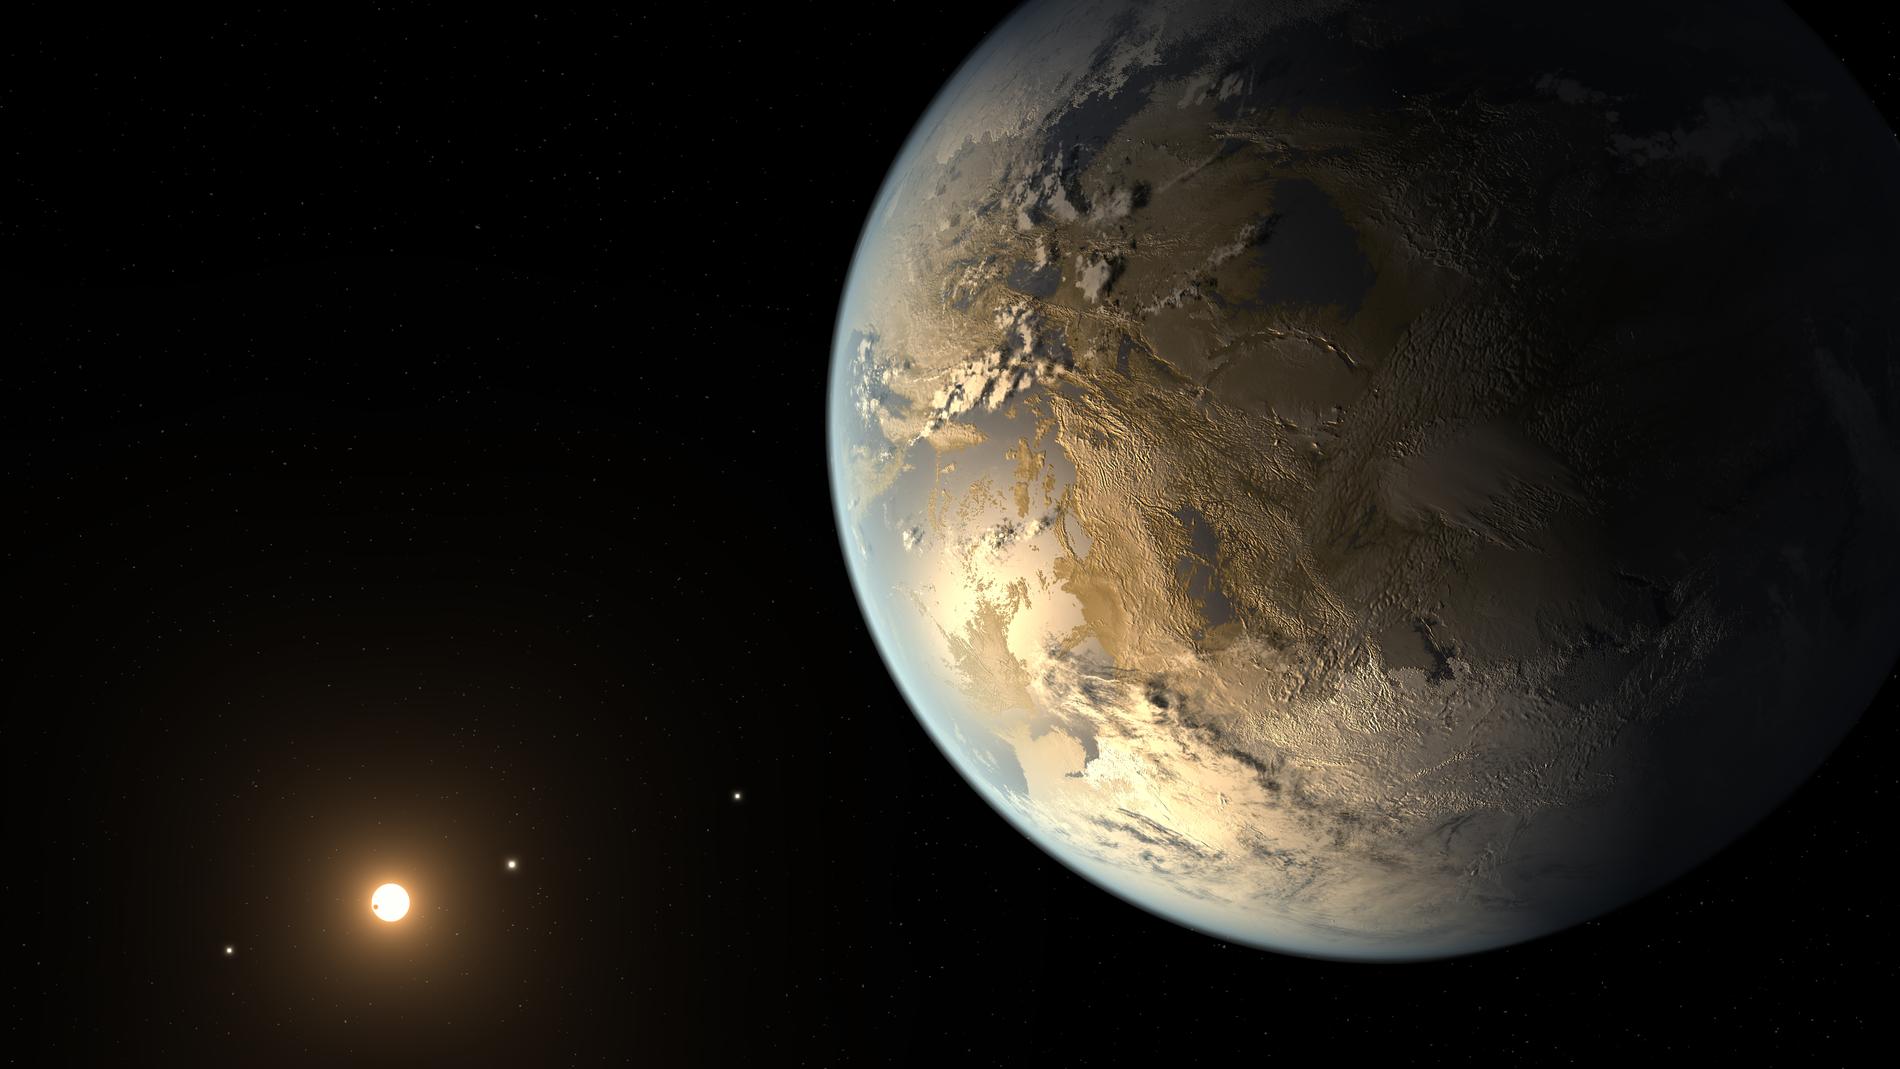 Av alla exoplaneter man hittat hittills så är Kepler 186 kanske den mest jordlika av dem alla. Planeten ligger dock smärtsamt långt bort: 500 ljusår från jorden. Dessutom är den kall. Minus 85 grader Celsius på ytan.